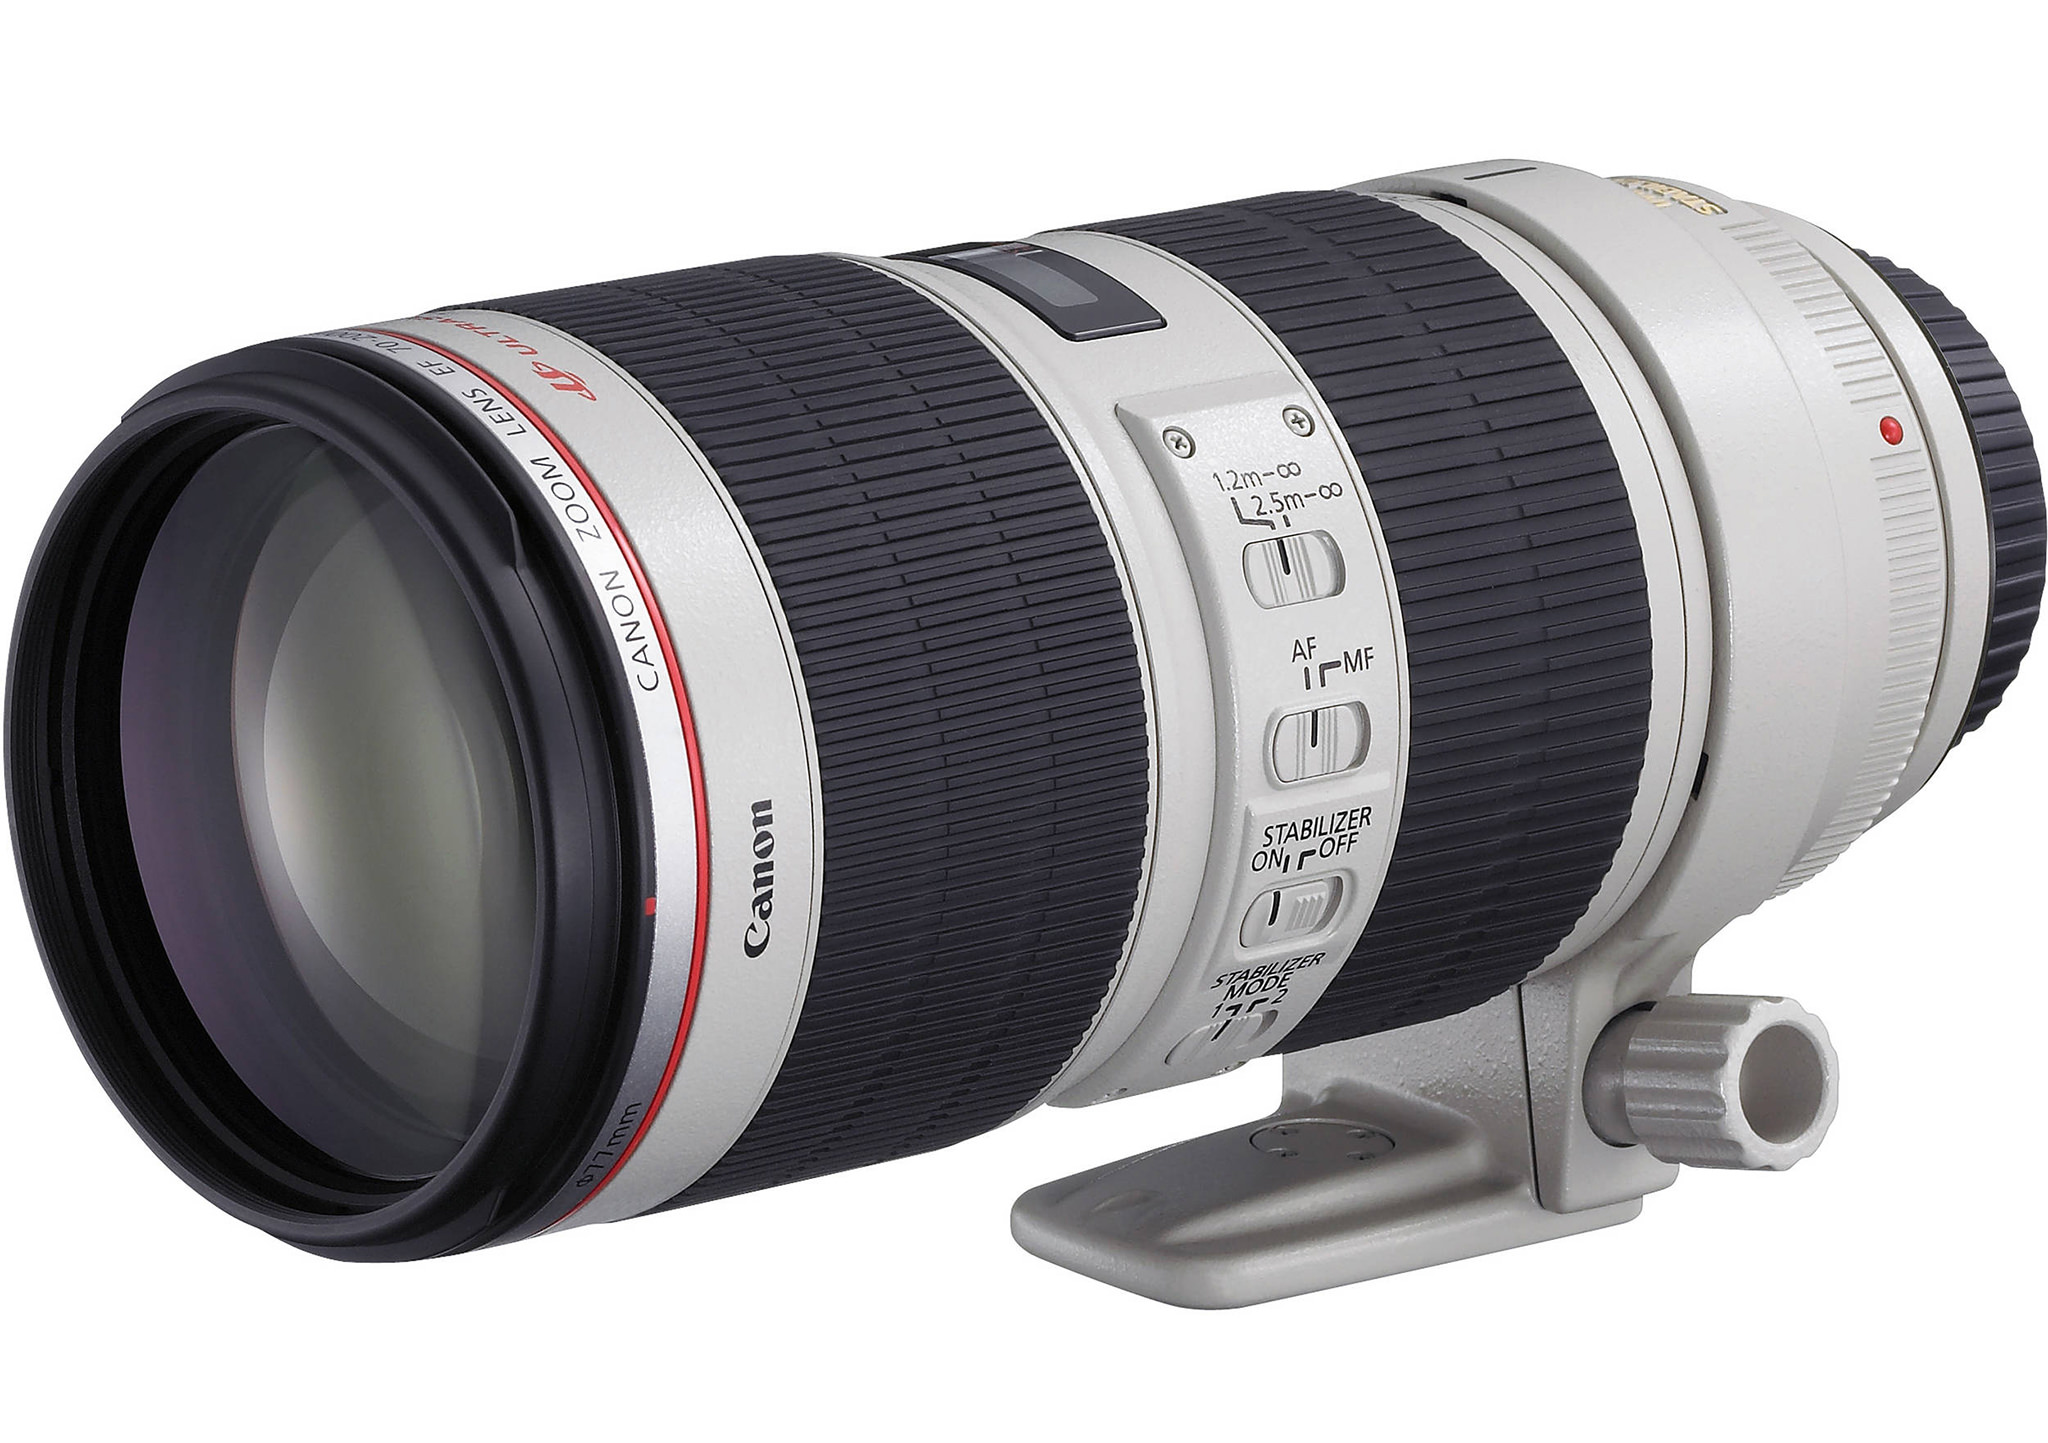 300mm F/4.0 IS 100-400mm Canon Lens Tripod Socket Parts 70-200mm F/2.8 IS L II